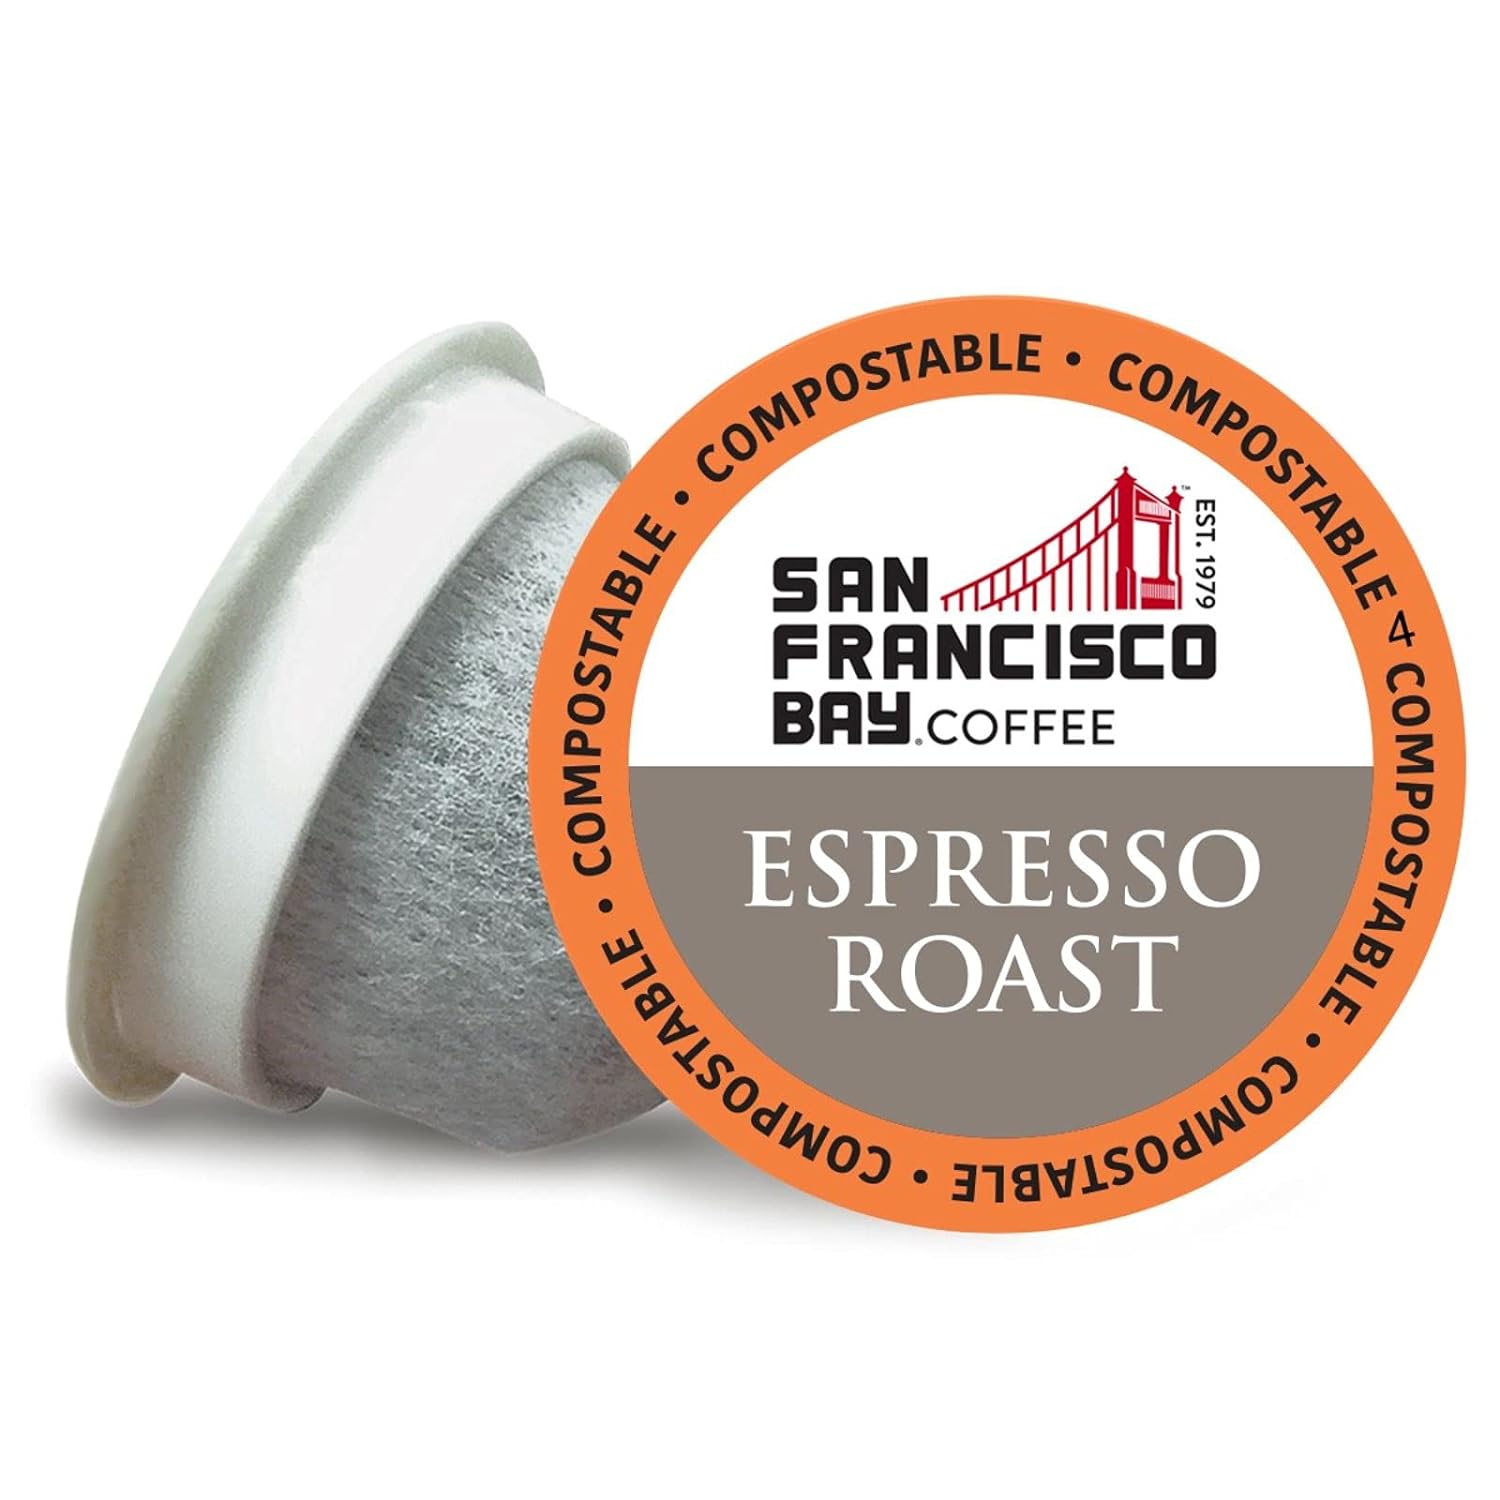 San Francisco Bay Compostable Coffee Pods - Espresso Roast (80 Ct) K Cup Compatible including Keurig 2.0, Dark Roast